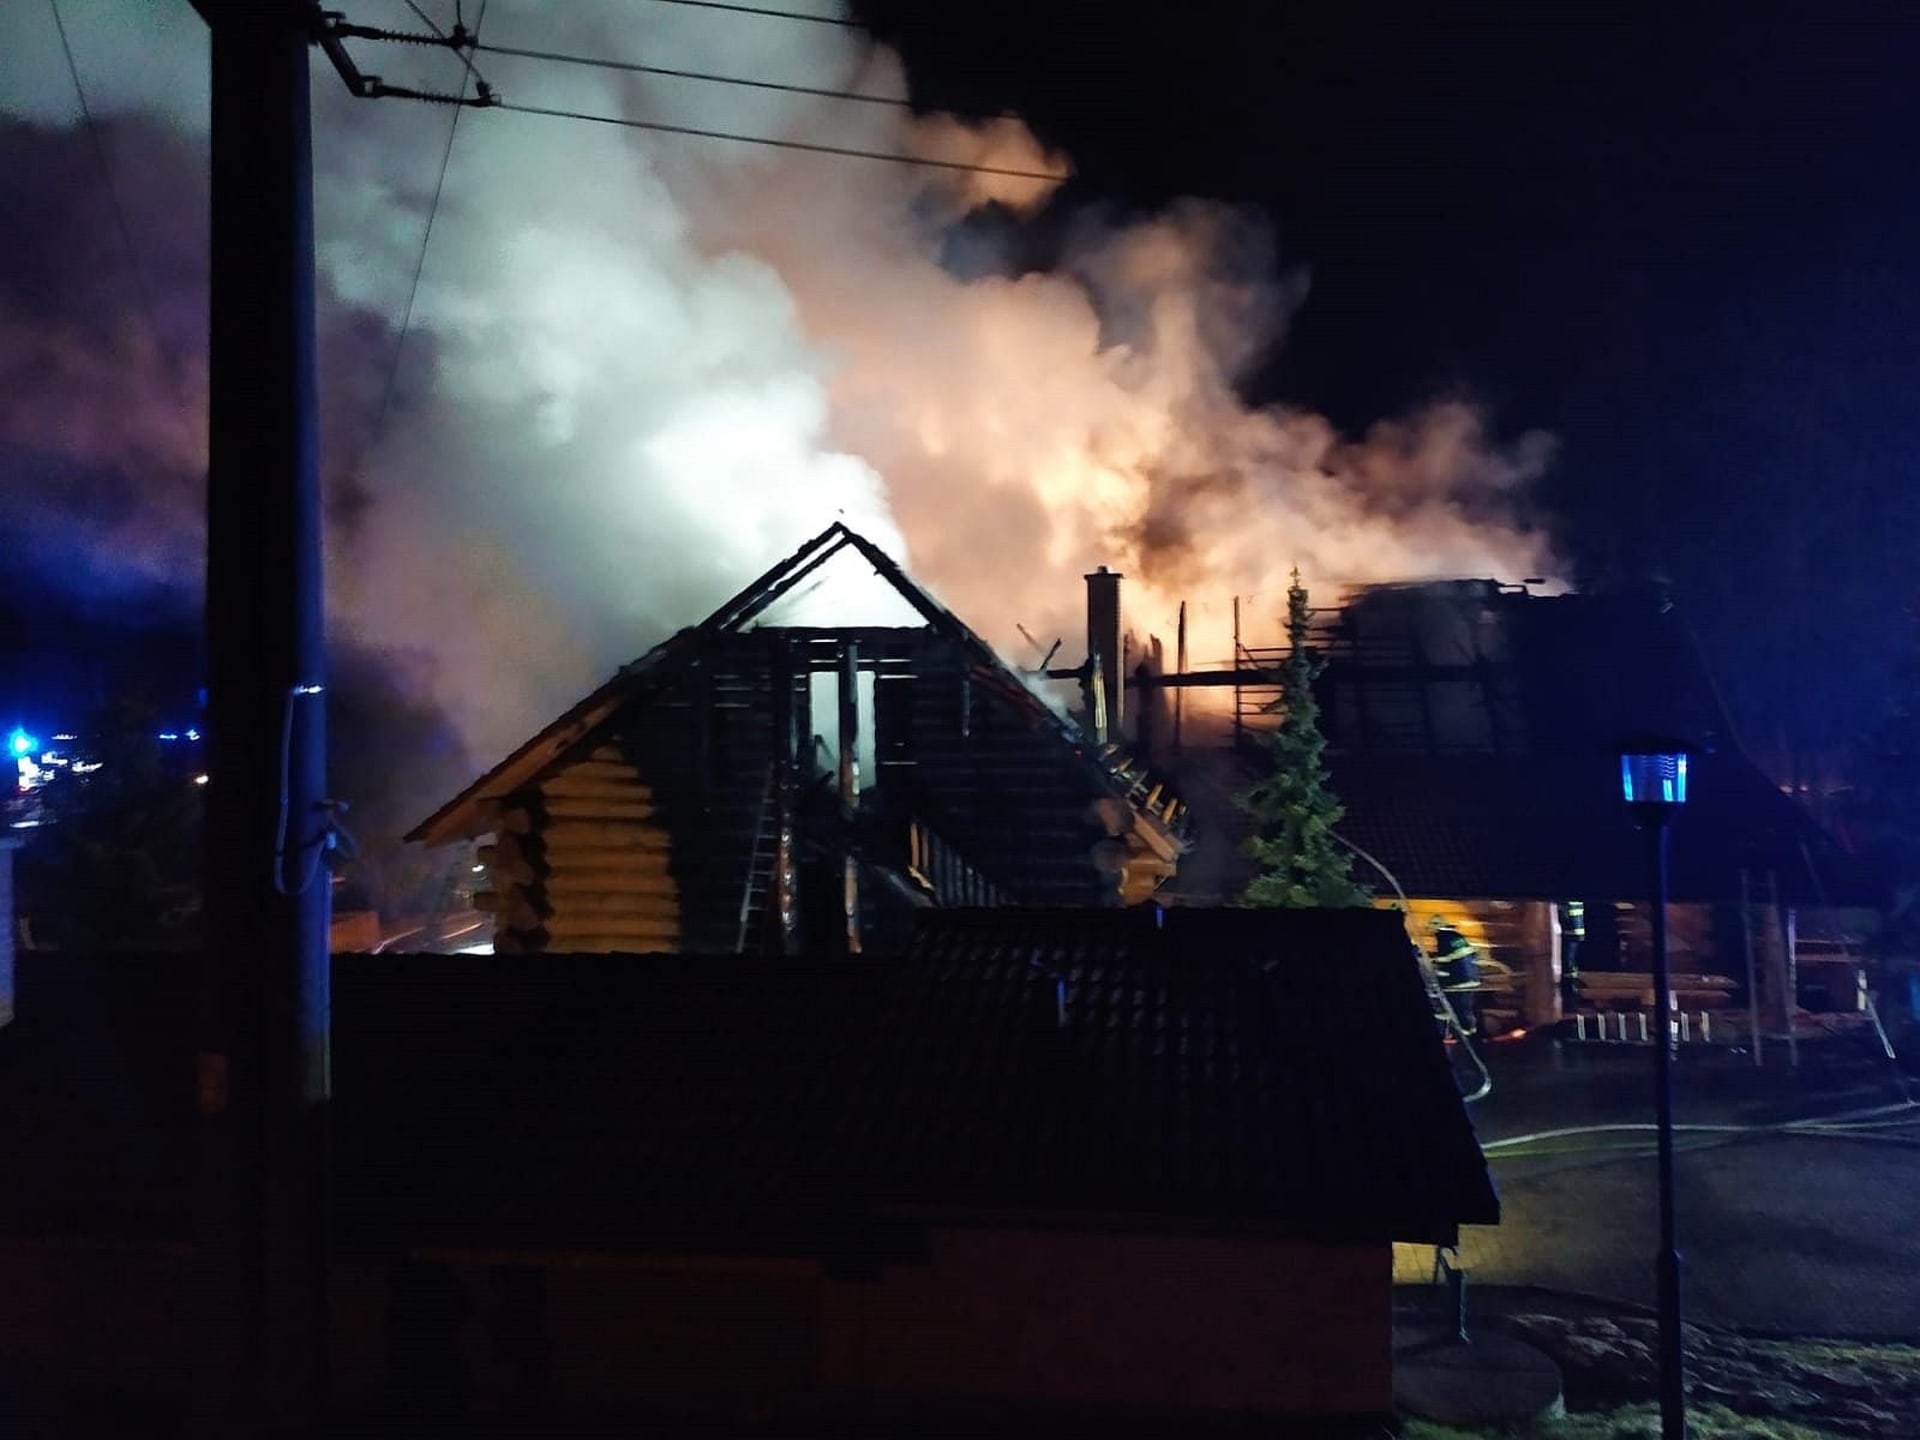 ožár likvidovalo sedm profesionálních a dobrovolných jednotek hasičů ze Zlínského a Jihomoravského kraje.